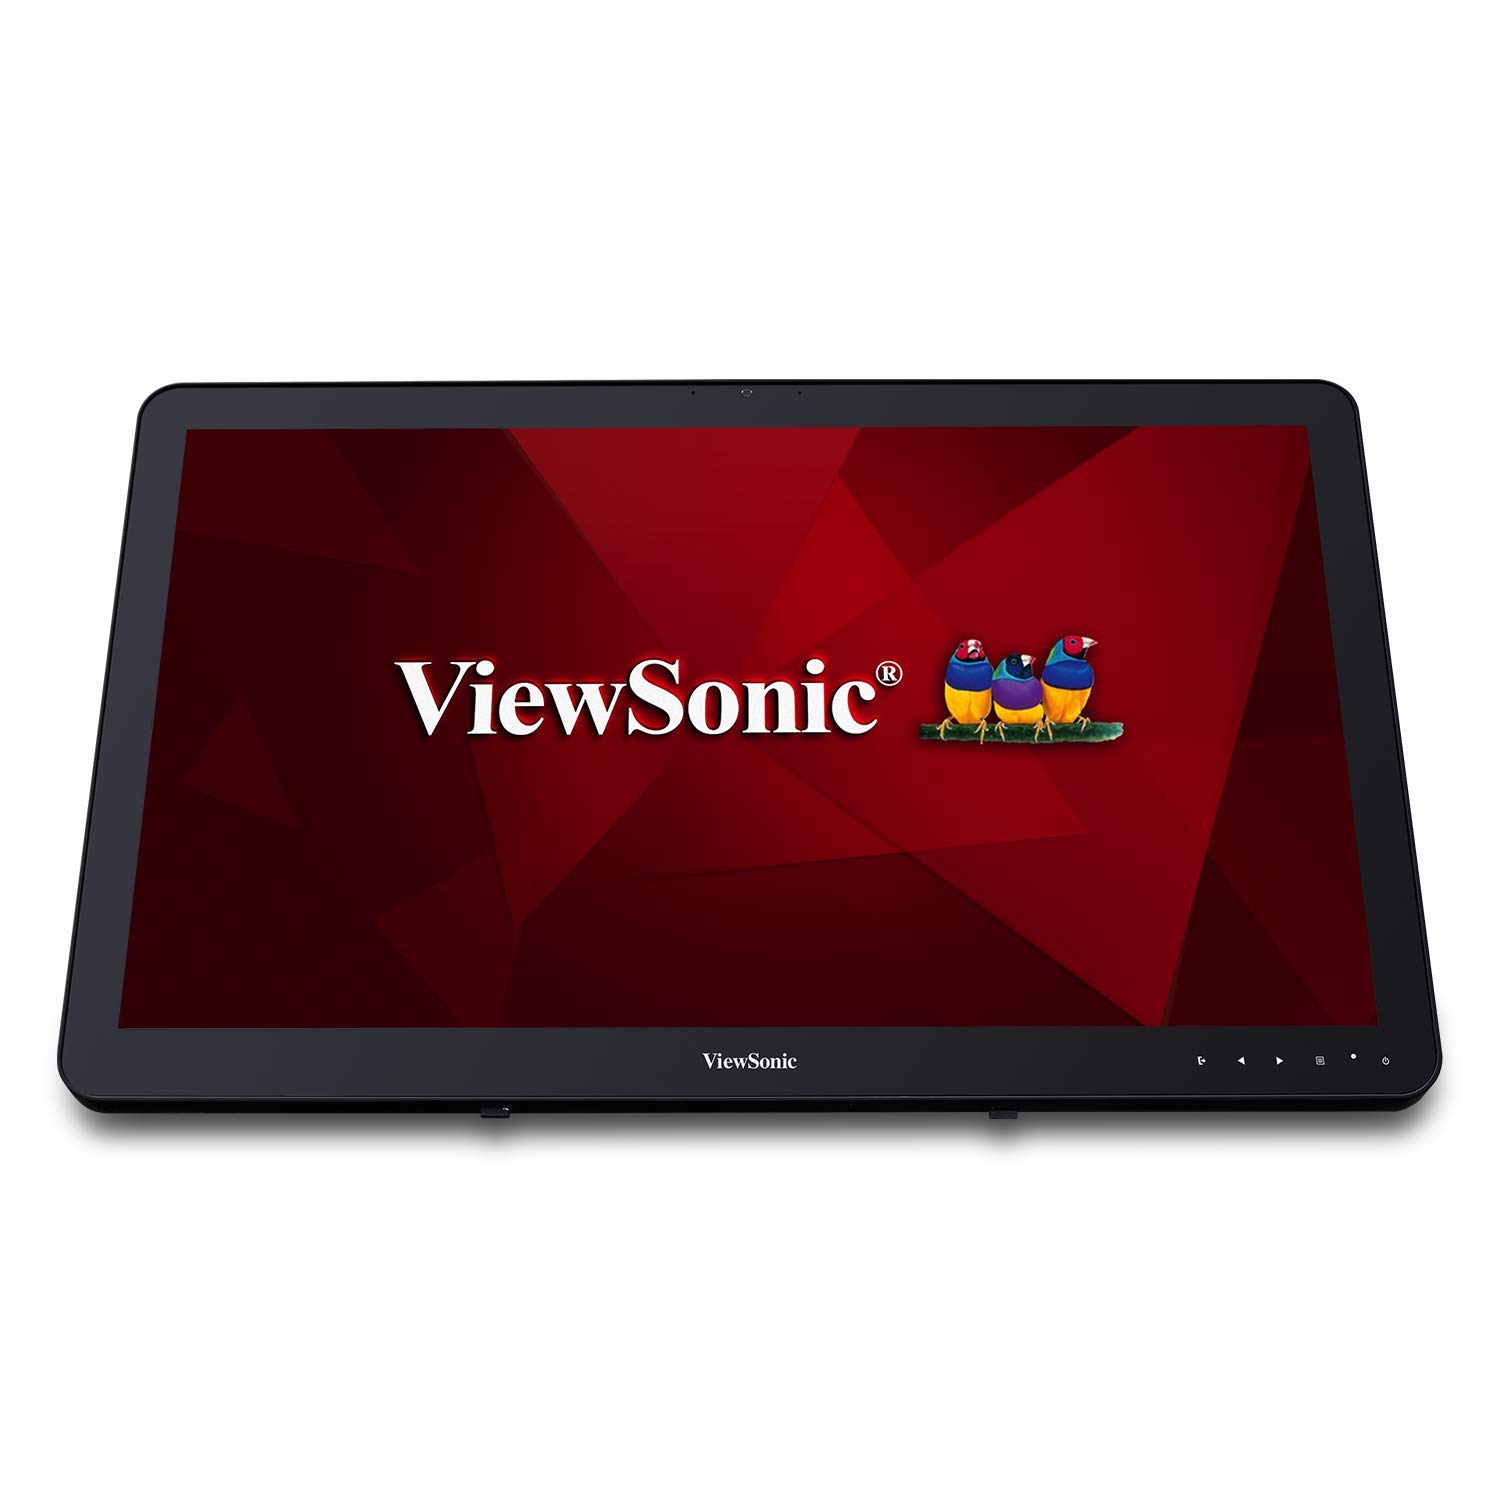  Viewsonic VSD243-BKA-US0 شاشة عرض رقمية ذكية تعمل باللمس مقاس 24 بوصة بدقة 1080 بكسل و 10 نقاط تعمل باللمس مزودة بتقنية البلوتوث...